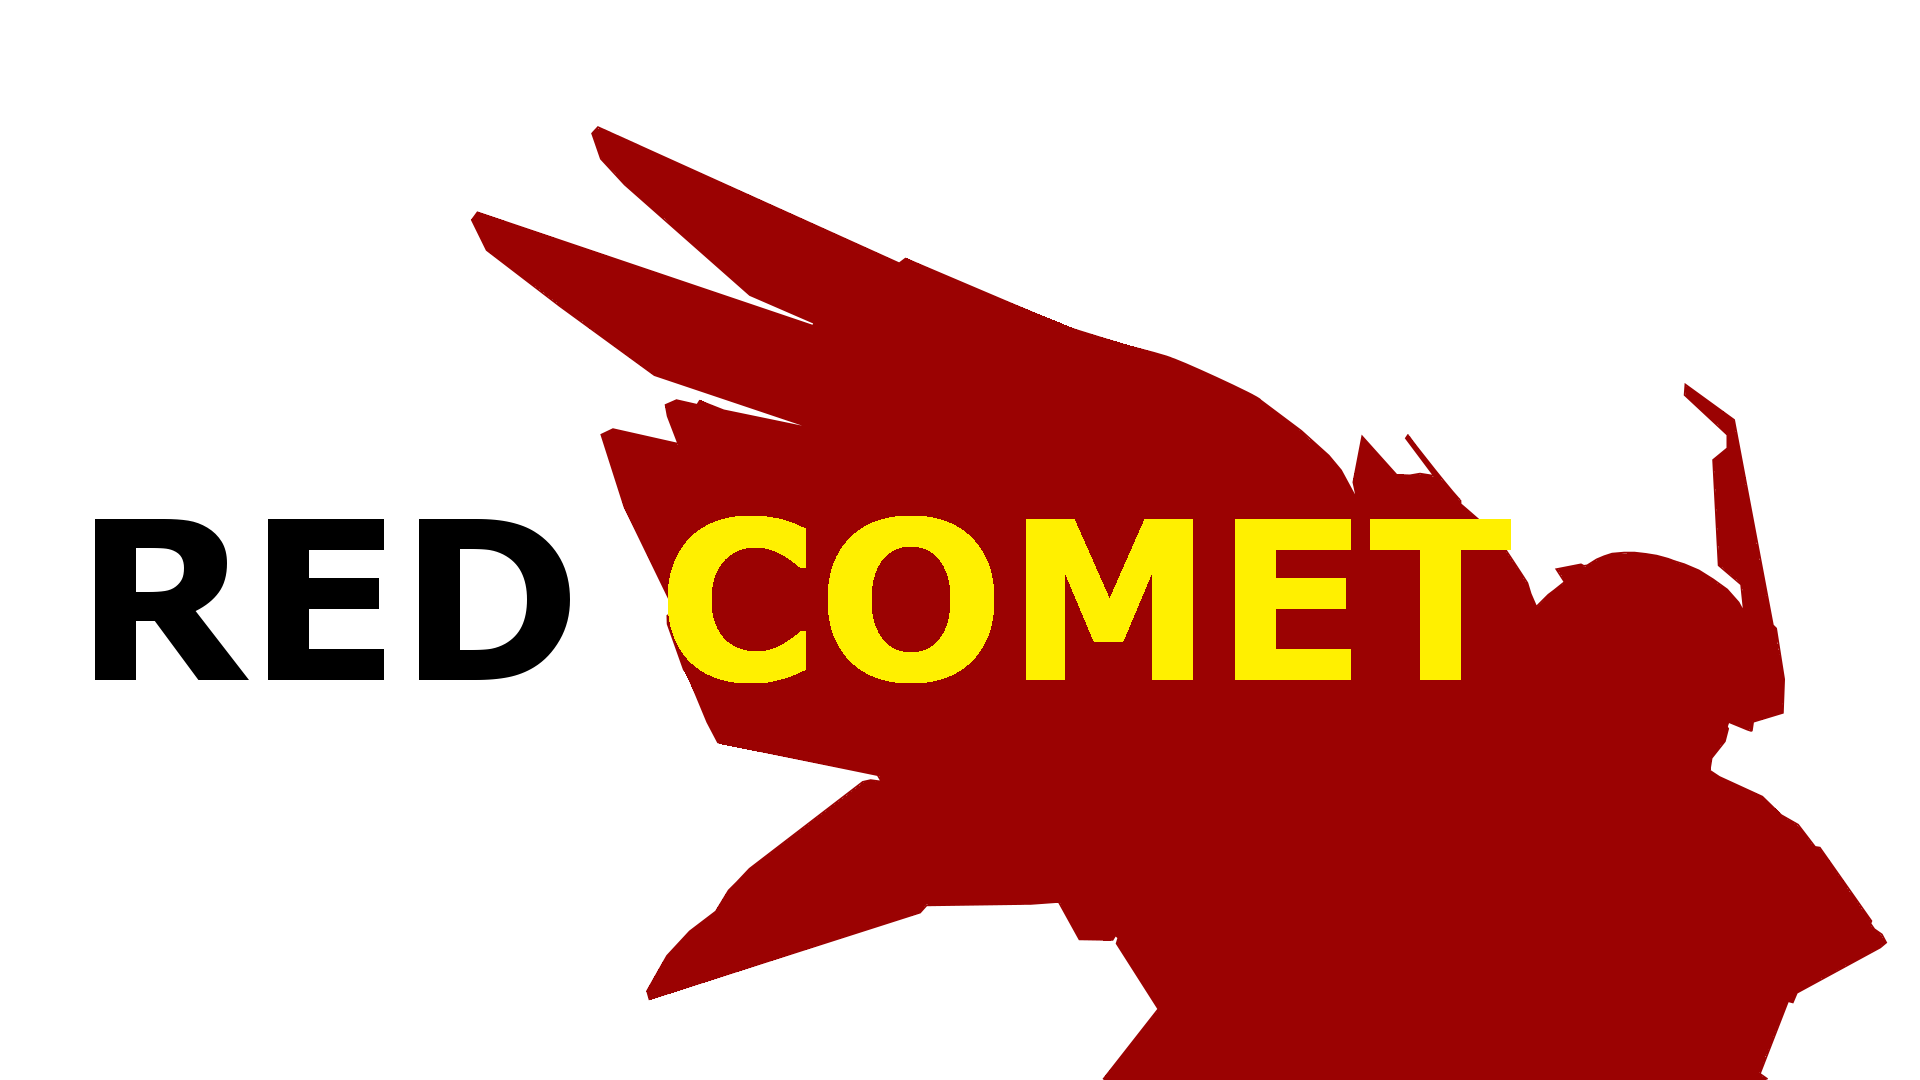 Red Comet